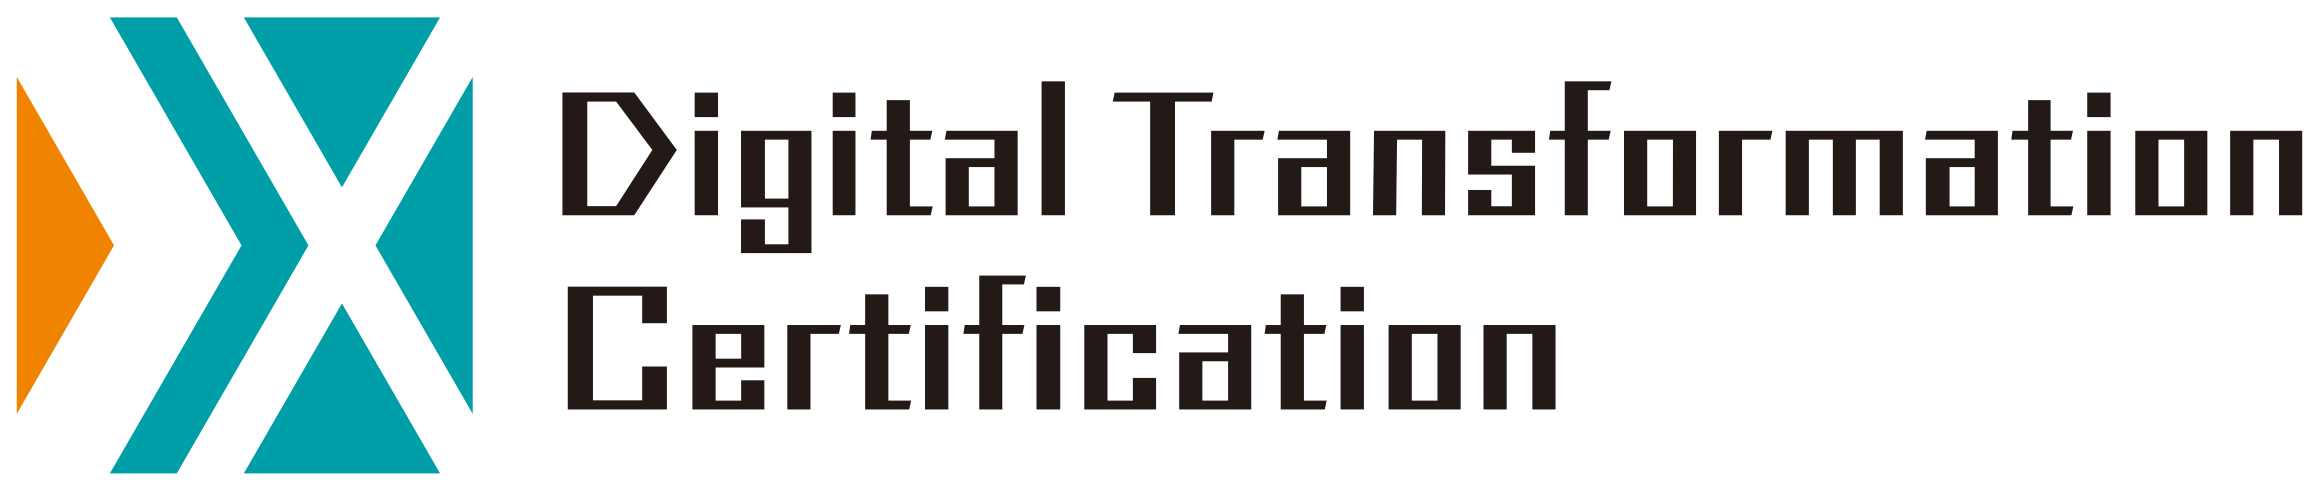 Digital Transformation Certification logo